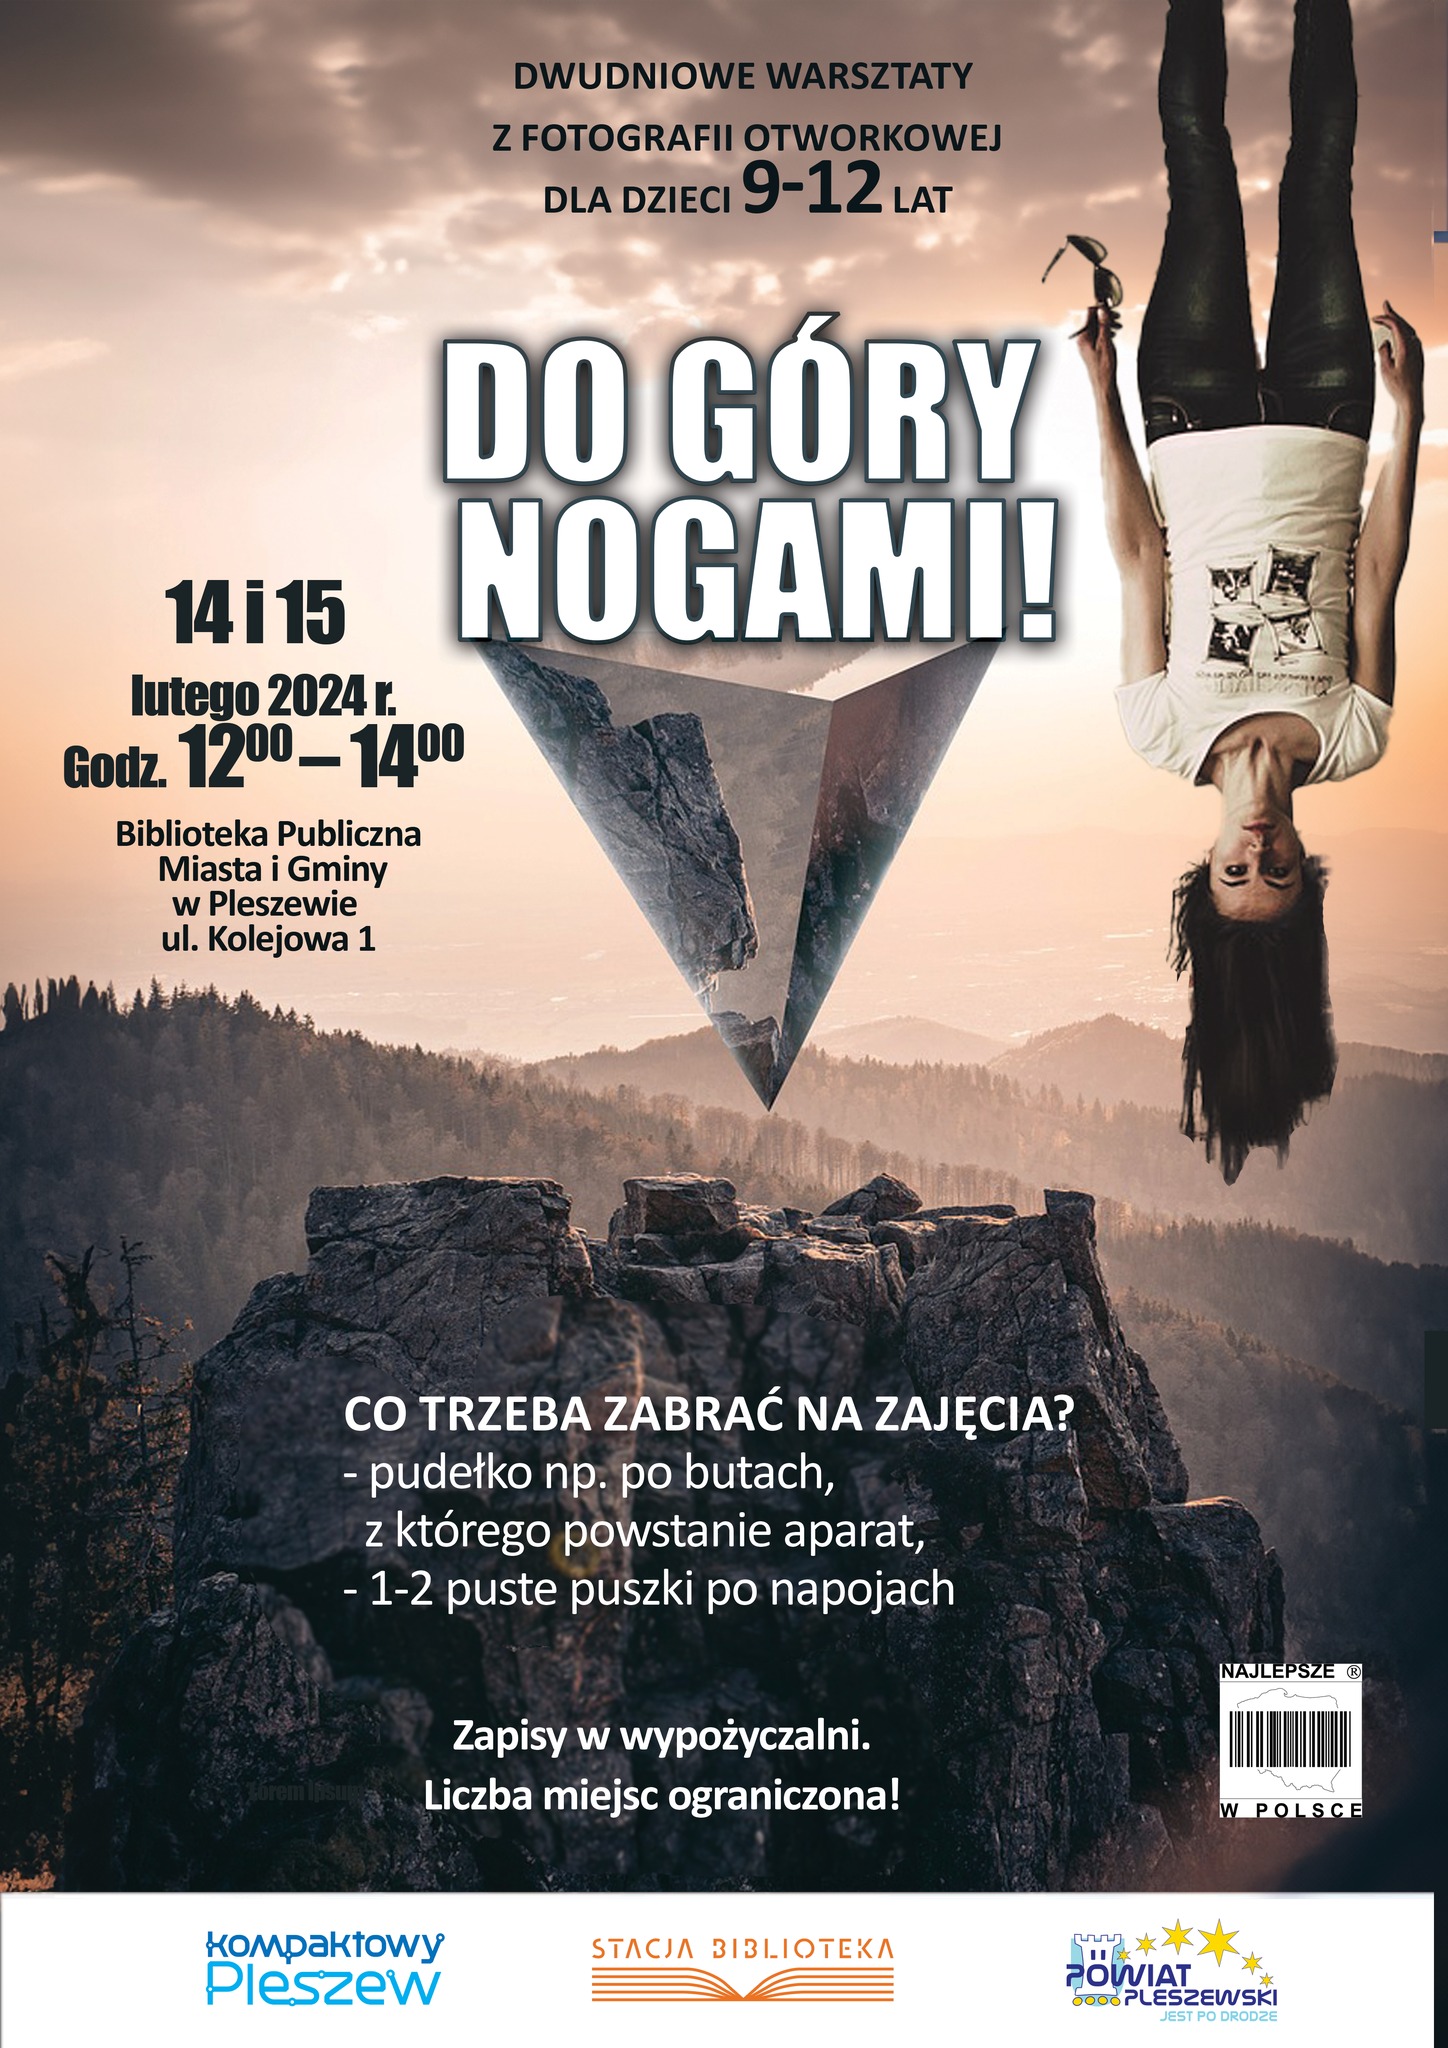 Plakat przedstawia wydarzenie w Bibliotece Publicznej MiG Pleszew "Dwudniowe warsztaty z fotografii otworkowej" odbywające się 14 i 15 lutego 2024 roku.